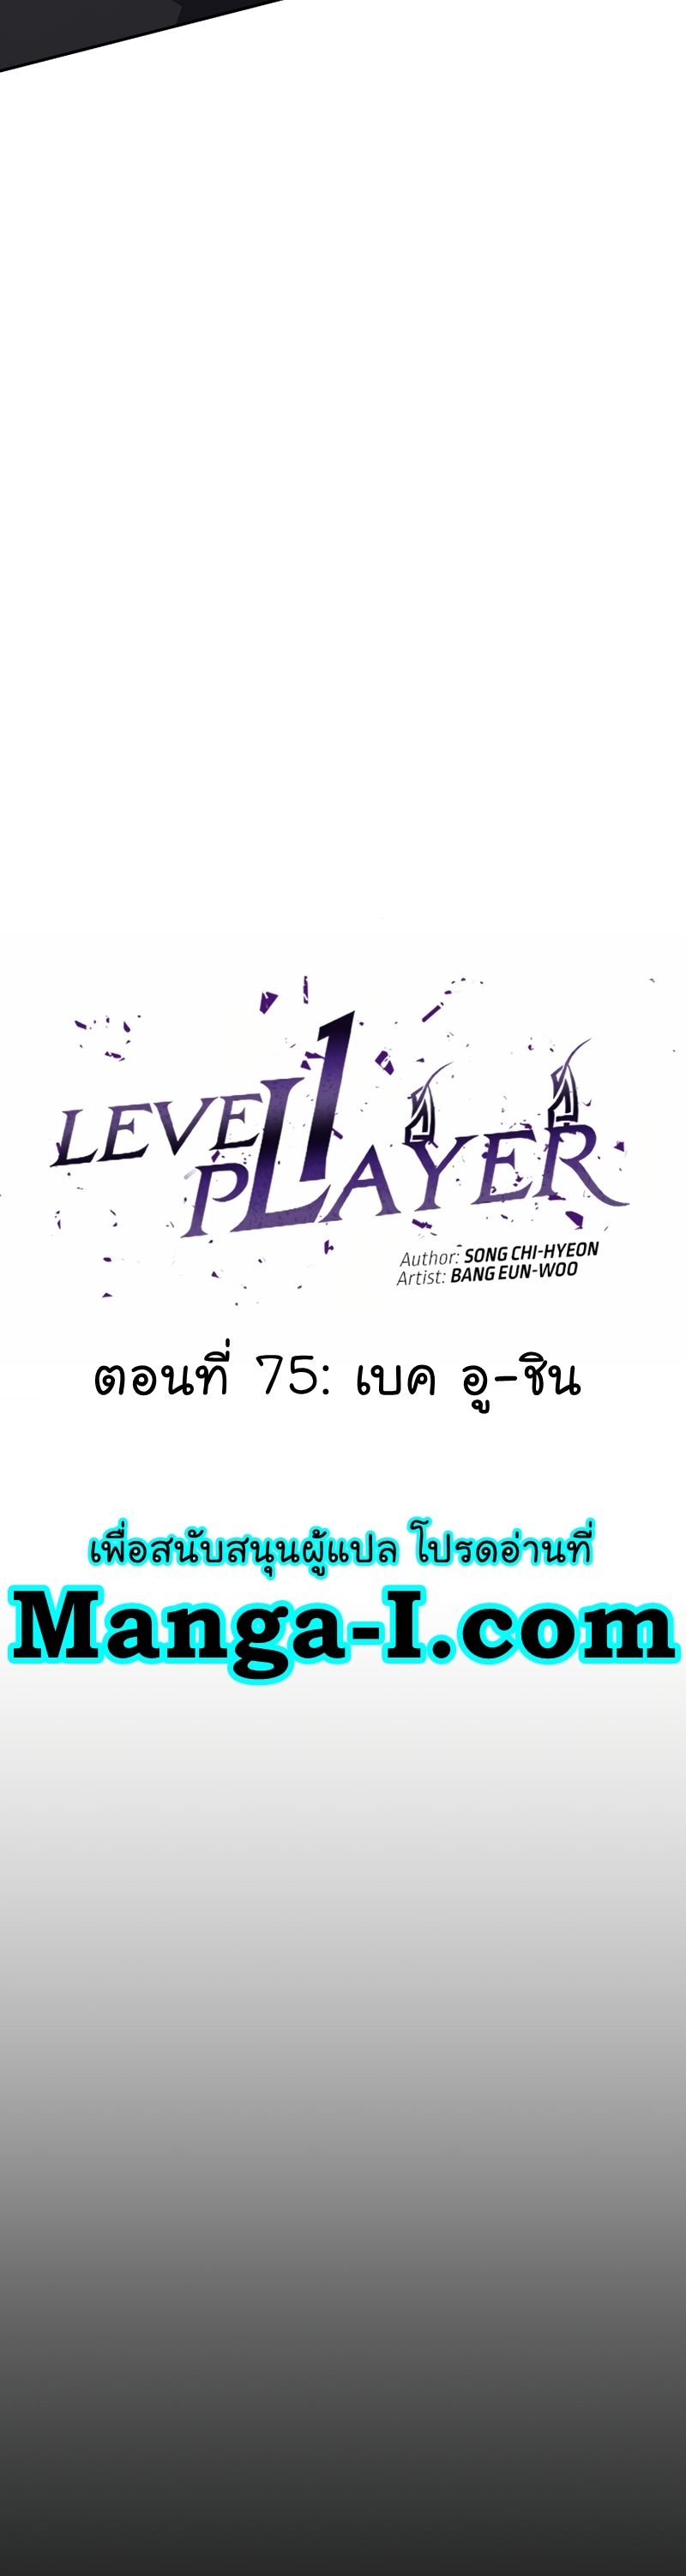 Manga Manhwa Level 1 Player 75 (9)